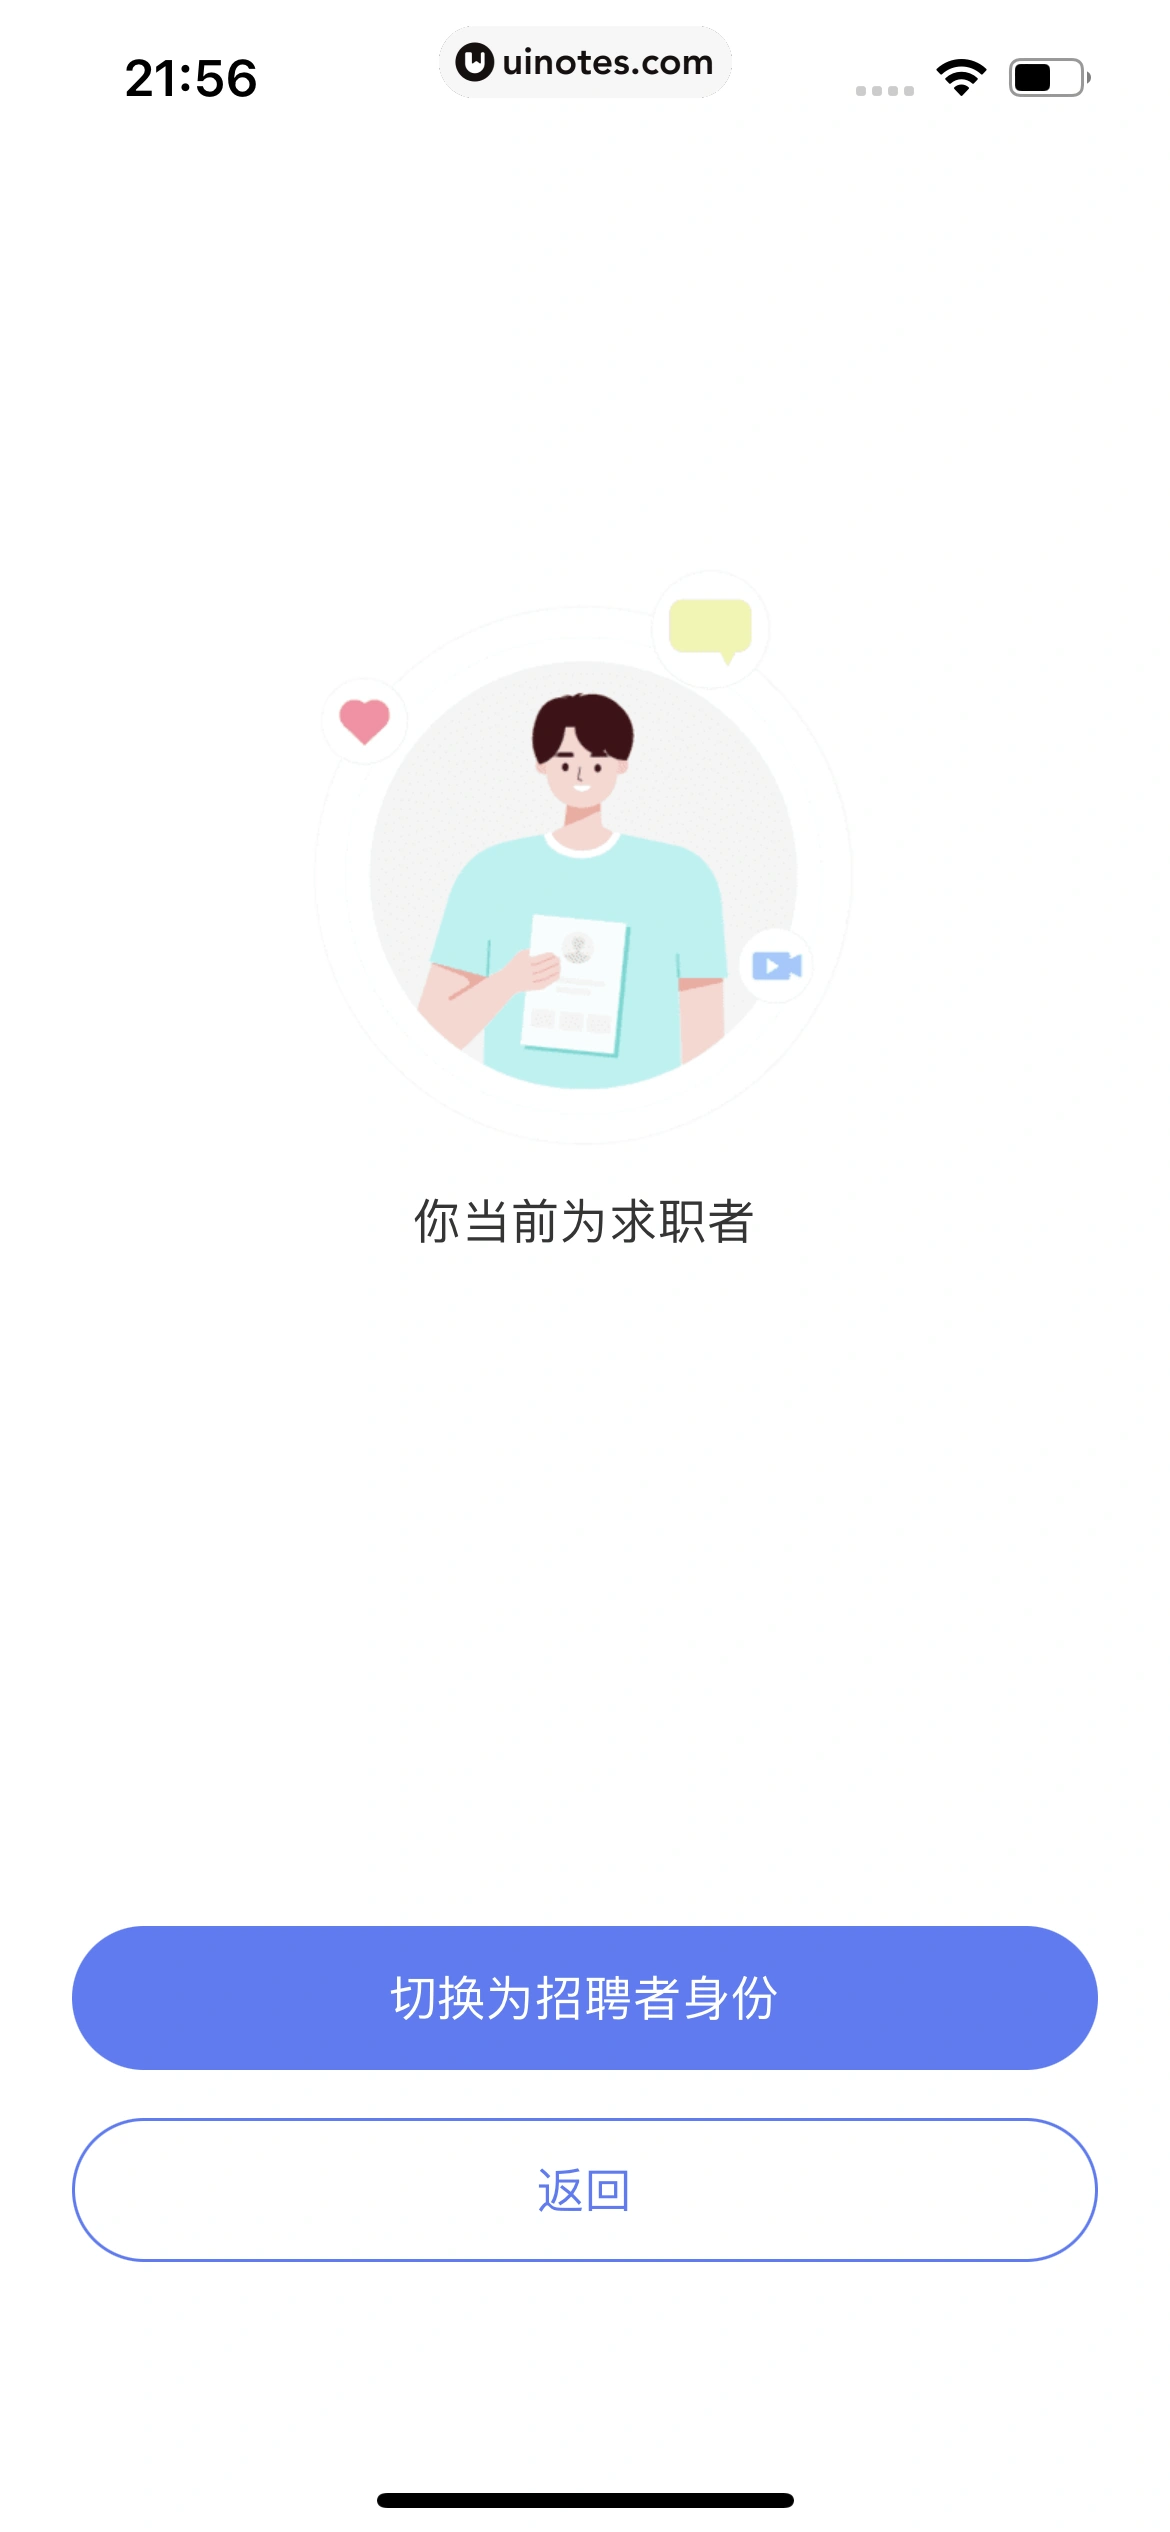 智联招聘 App 截图 041 - UI Notes